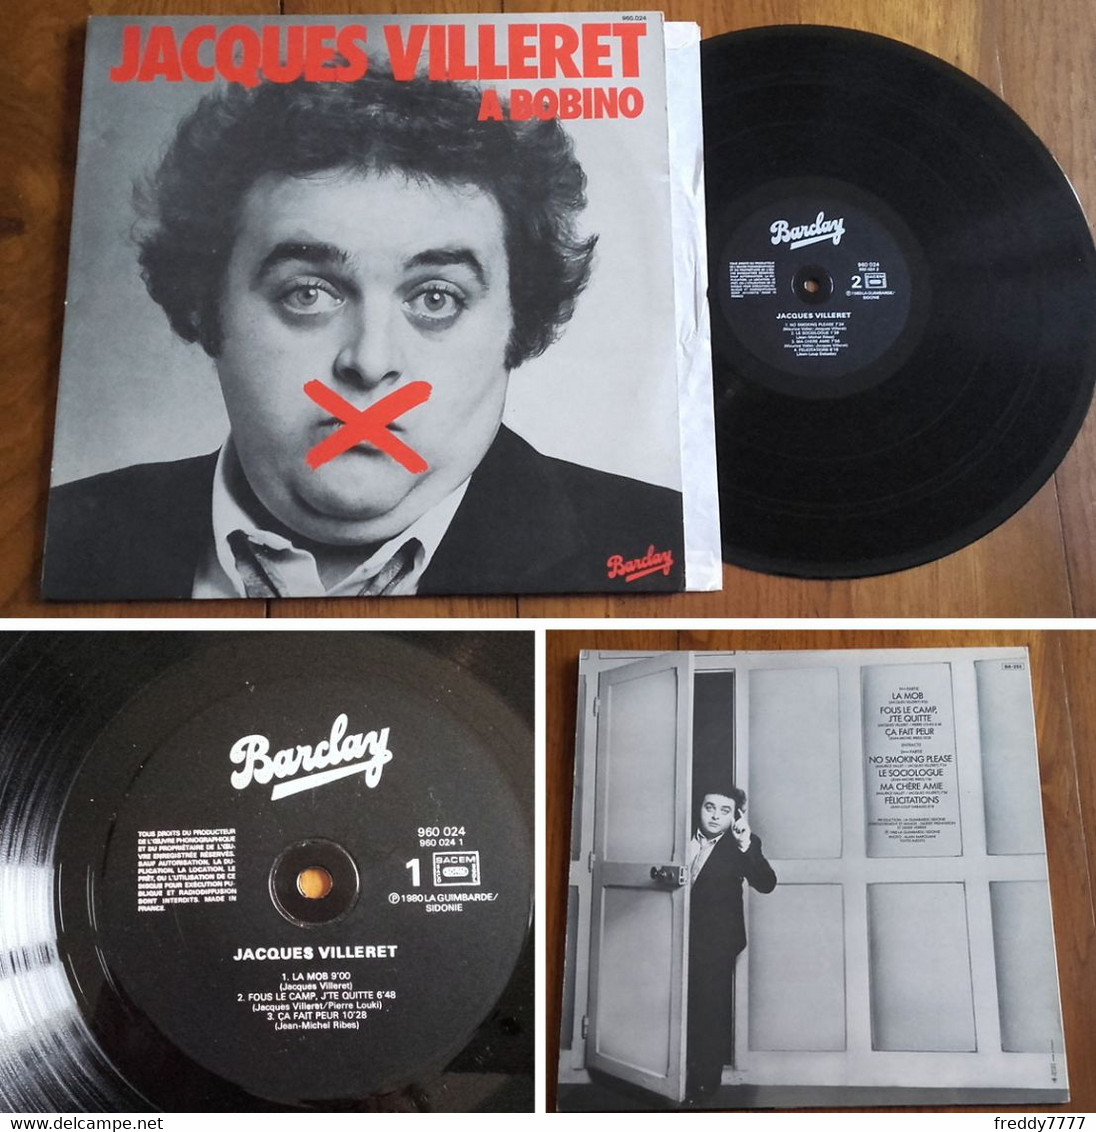 RARE French LP 33t RPM (12") JACQUES VILLERET à BOBINO (1980) - Verzameluitgaven